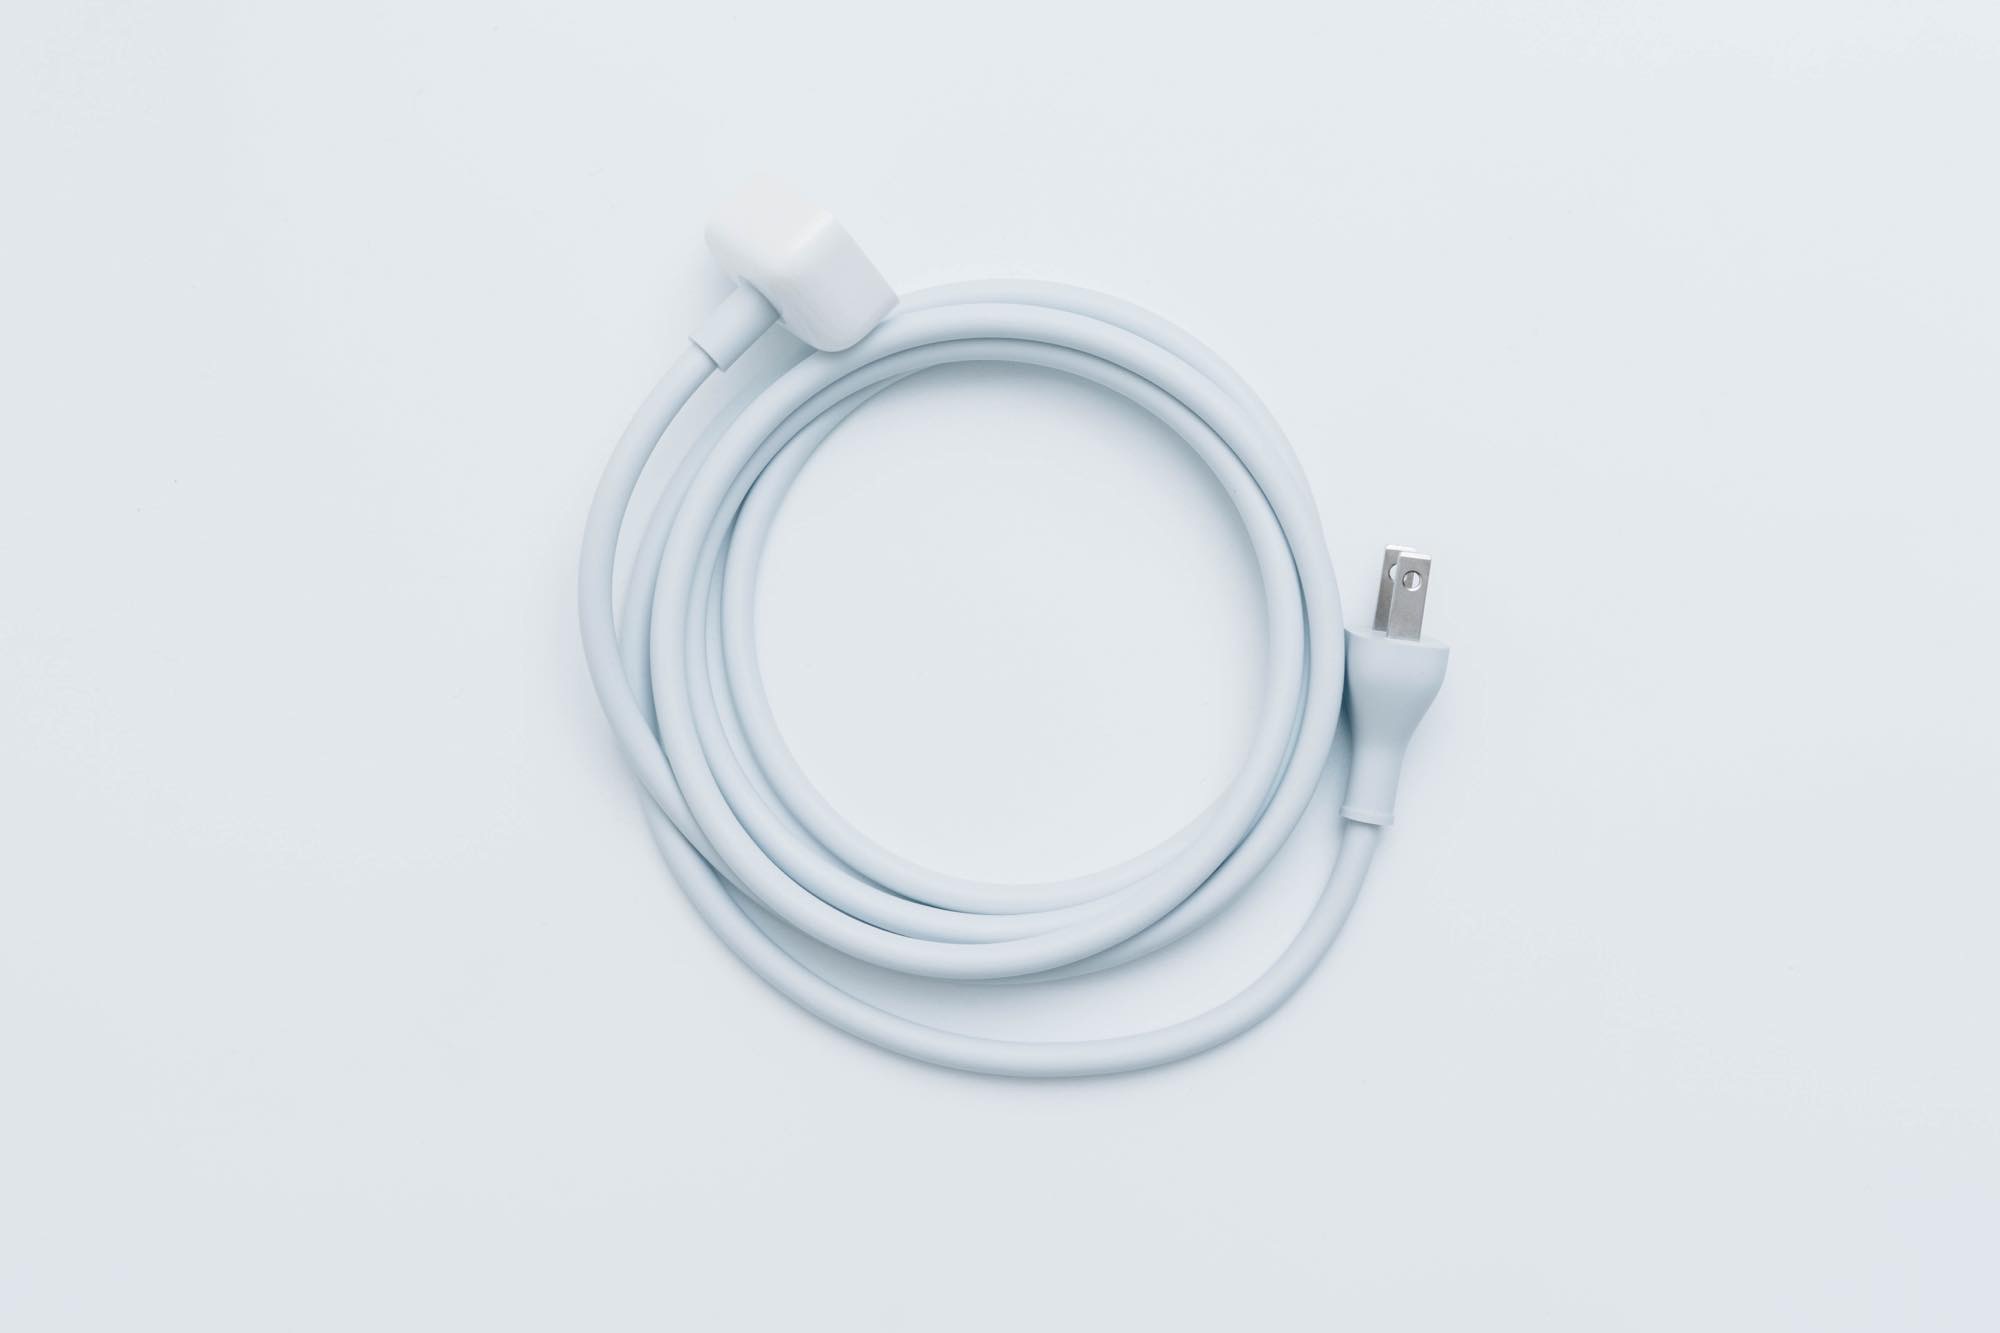 旅行や帰省に MacBook Pro 用『電源アダプタ延長ケーブル』を購入。USB